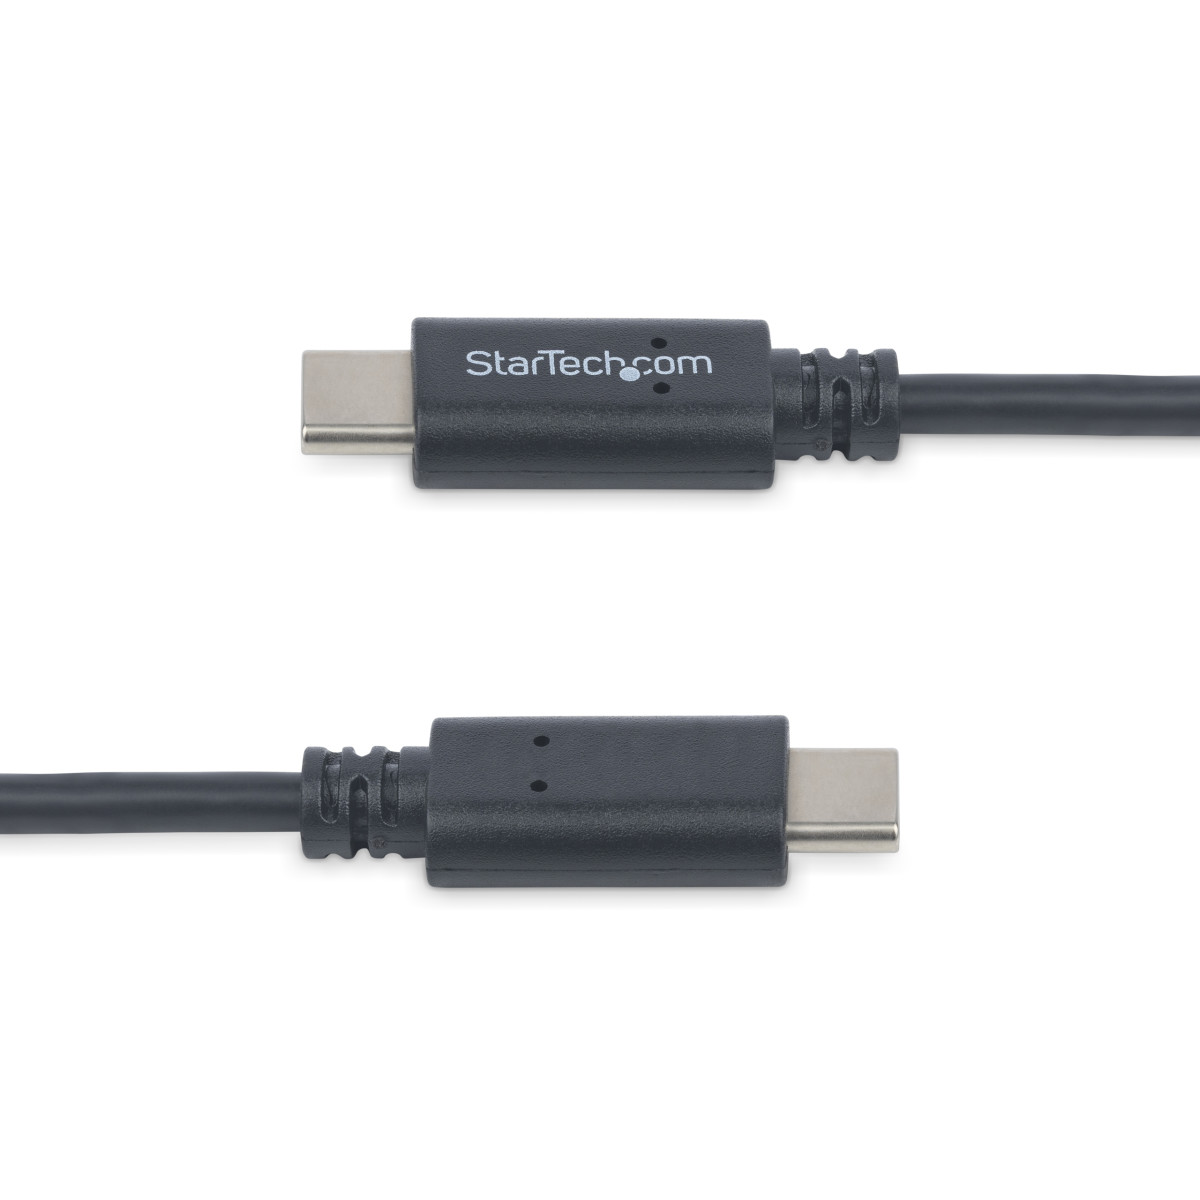 USB-C Cable M/M 1 m USB 2.0